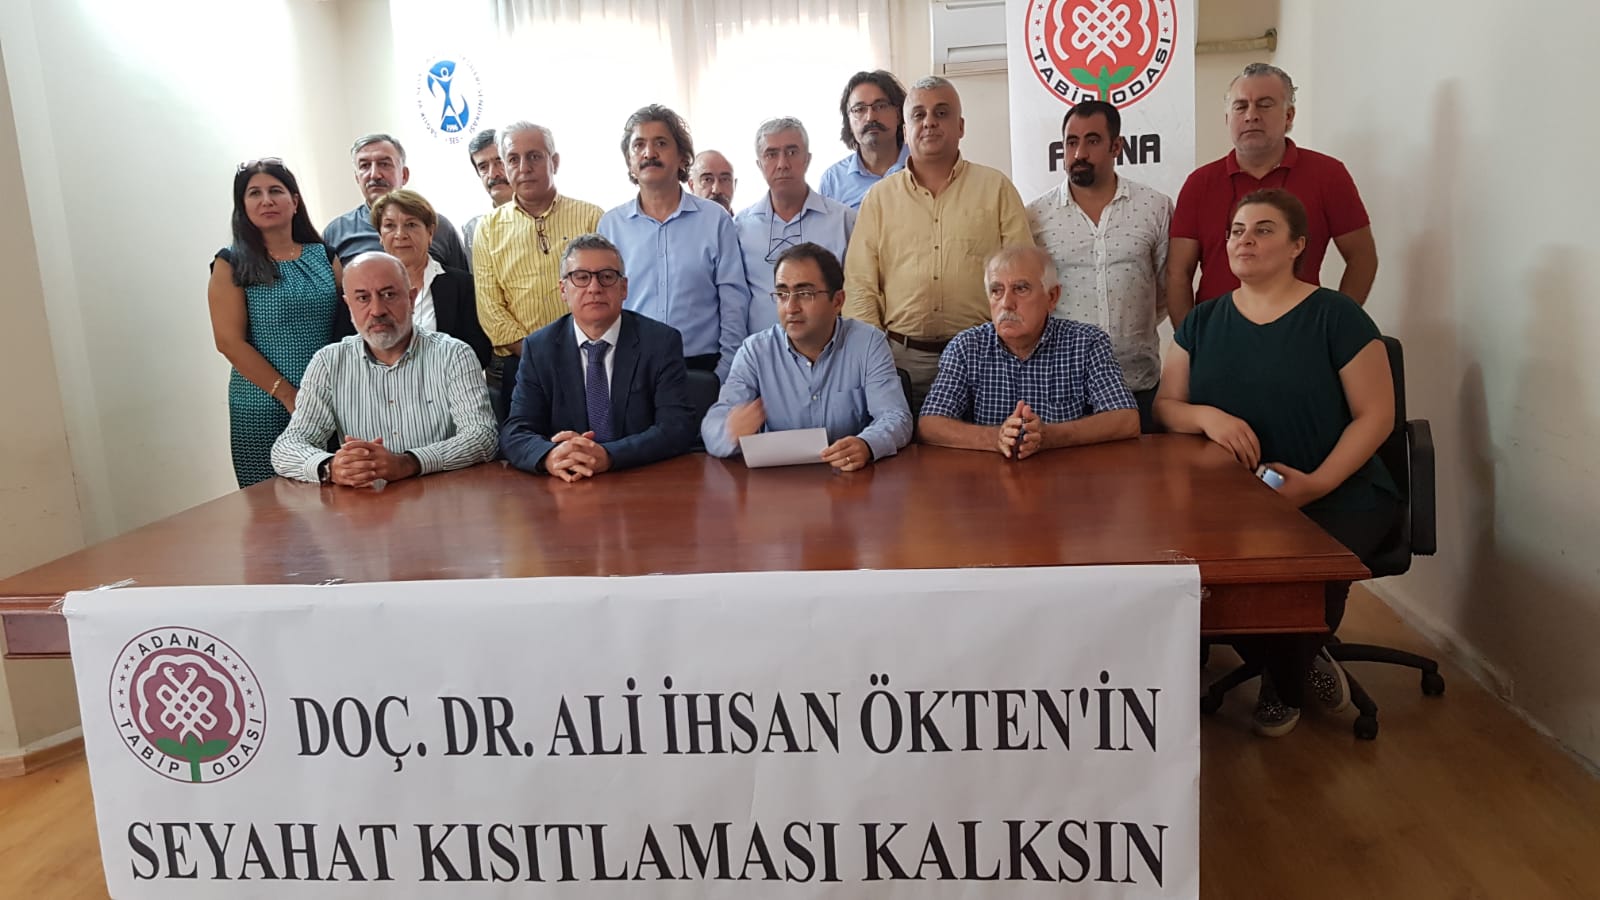 Adana: Dr. Ali İhsan Ökten Hakkındaki Seyahat Kısıtlaması Kararı Kaldırılsın